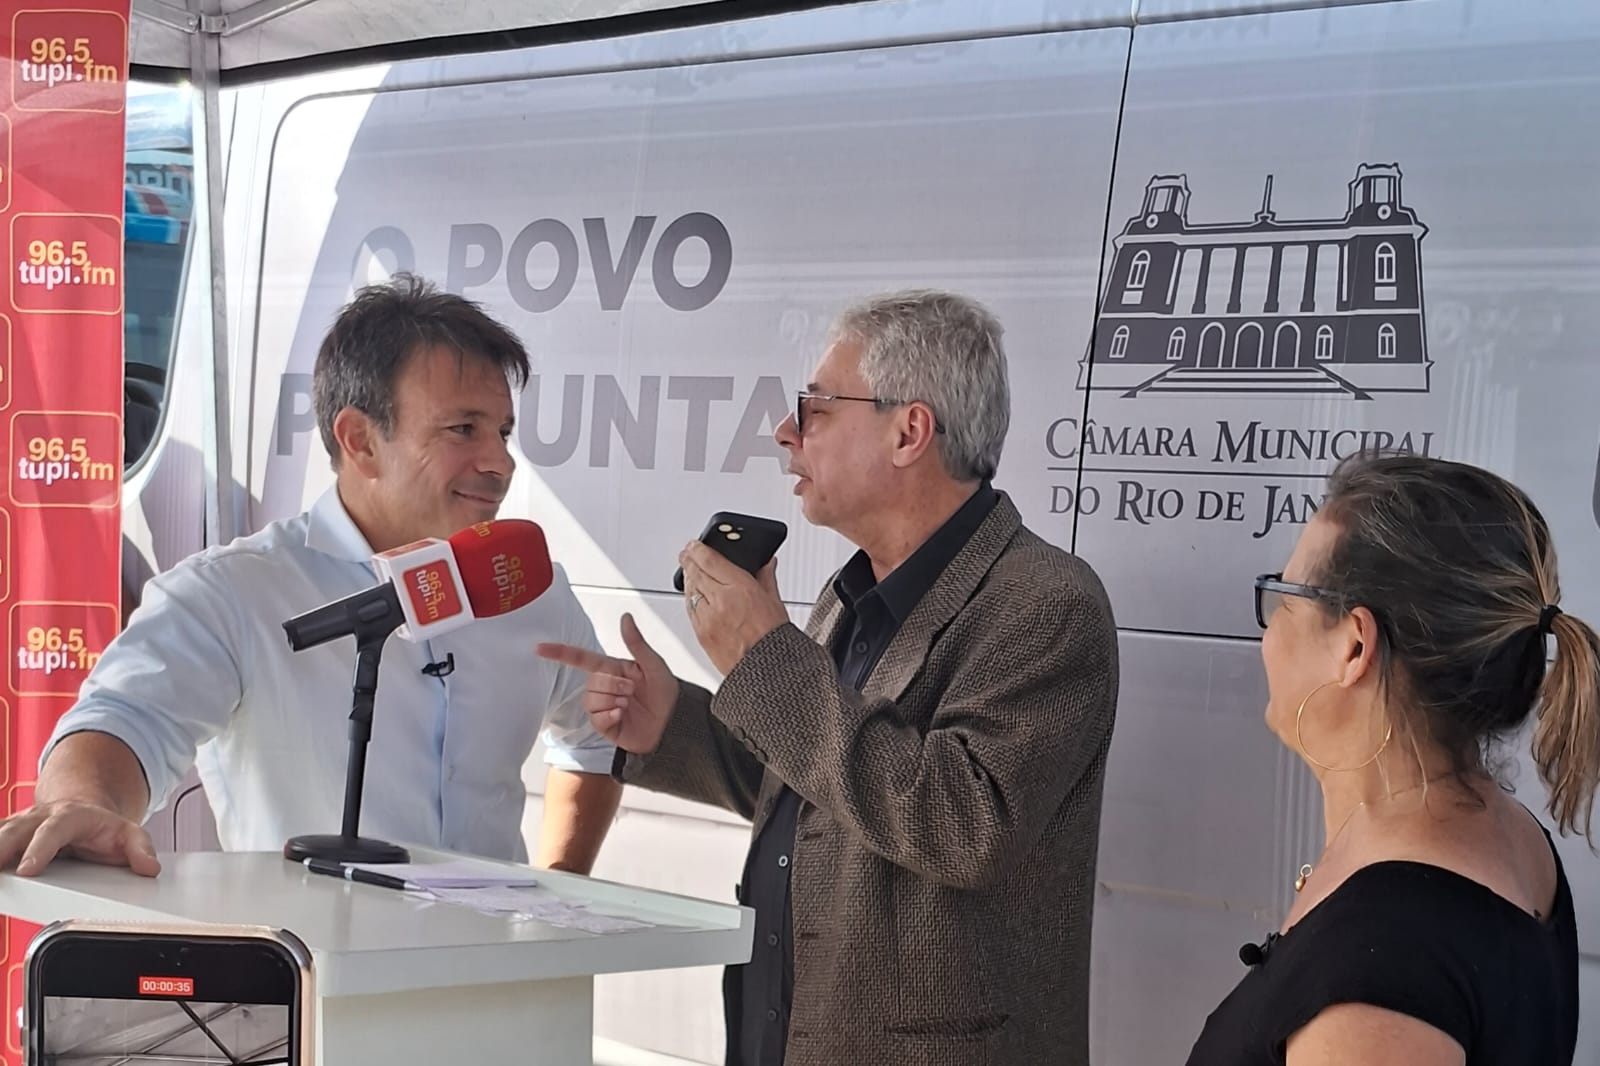 Carlo Caiado, persidente da Câmara Municipal do Rio ao lado do comunicador da Tupi, Marcos Vinícius.